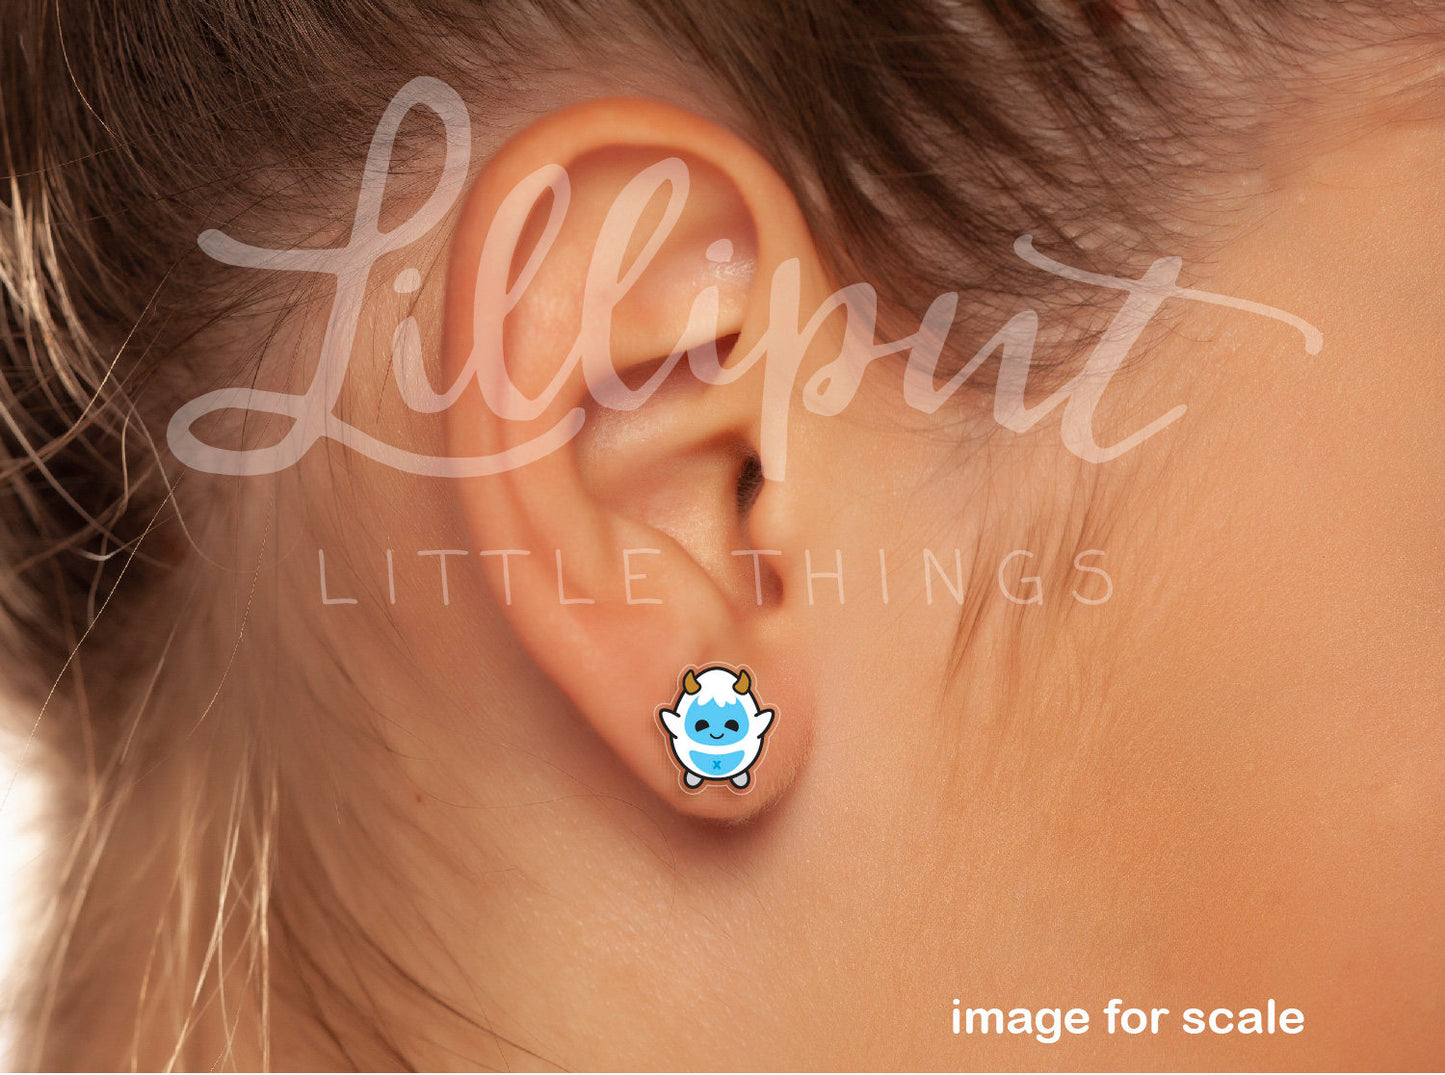 Yeti Earrings // Baby Yeti Earrings // Kawaii Yeti // Novelty Earrings // Quirky Earrings // Stocking Stuffer